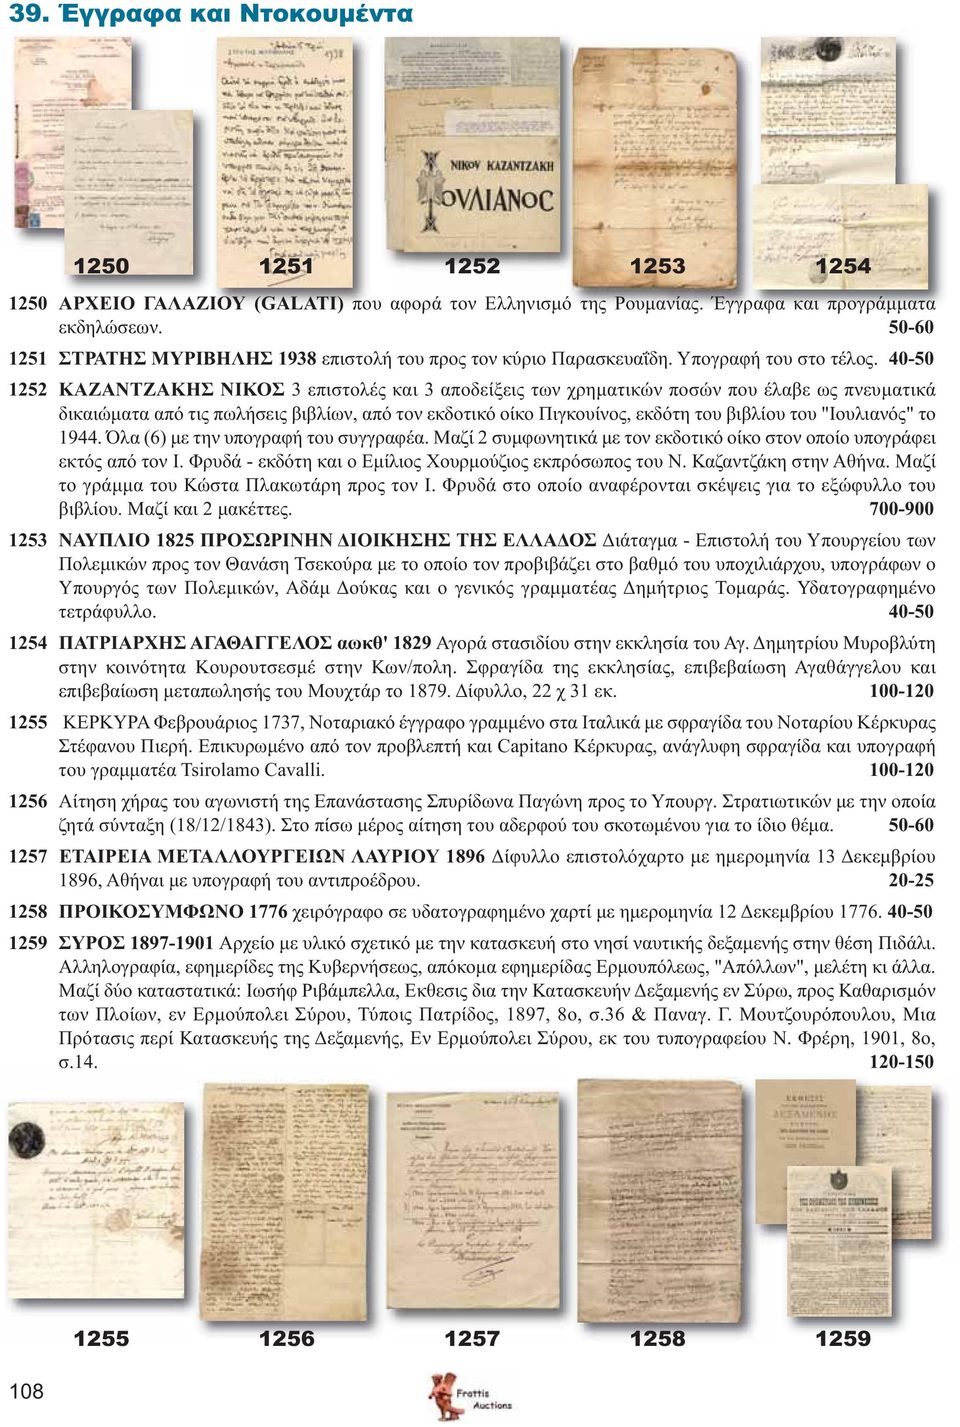 40-50 1252 ΚΑΖΑΝΤΖΑΚΗΣ ΝΙΚΟΣ 3 επιστολές και 3 αποδείξεις των χρηματικών ποσών που έλαβε ως πνευματικά δικαιώματα από τις πωλήσεις βιβλίων, από τον εκδοτικό οίκο Πιγκουίνος, εκδότη του βιβλίου του